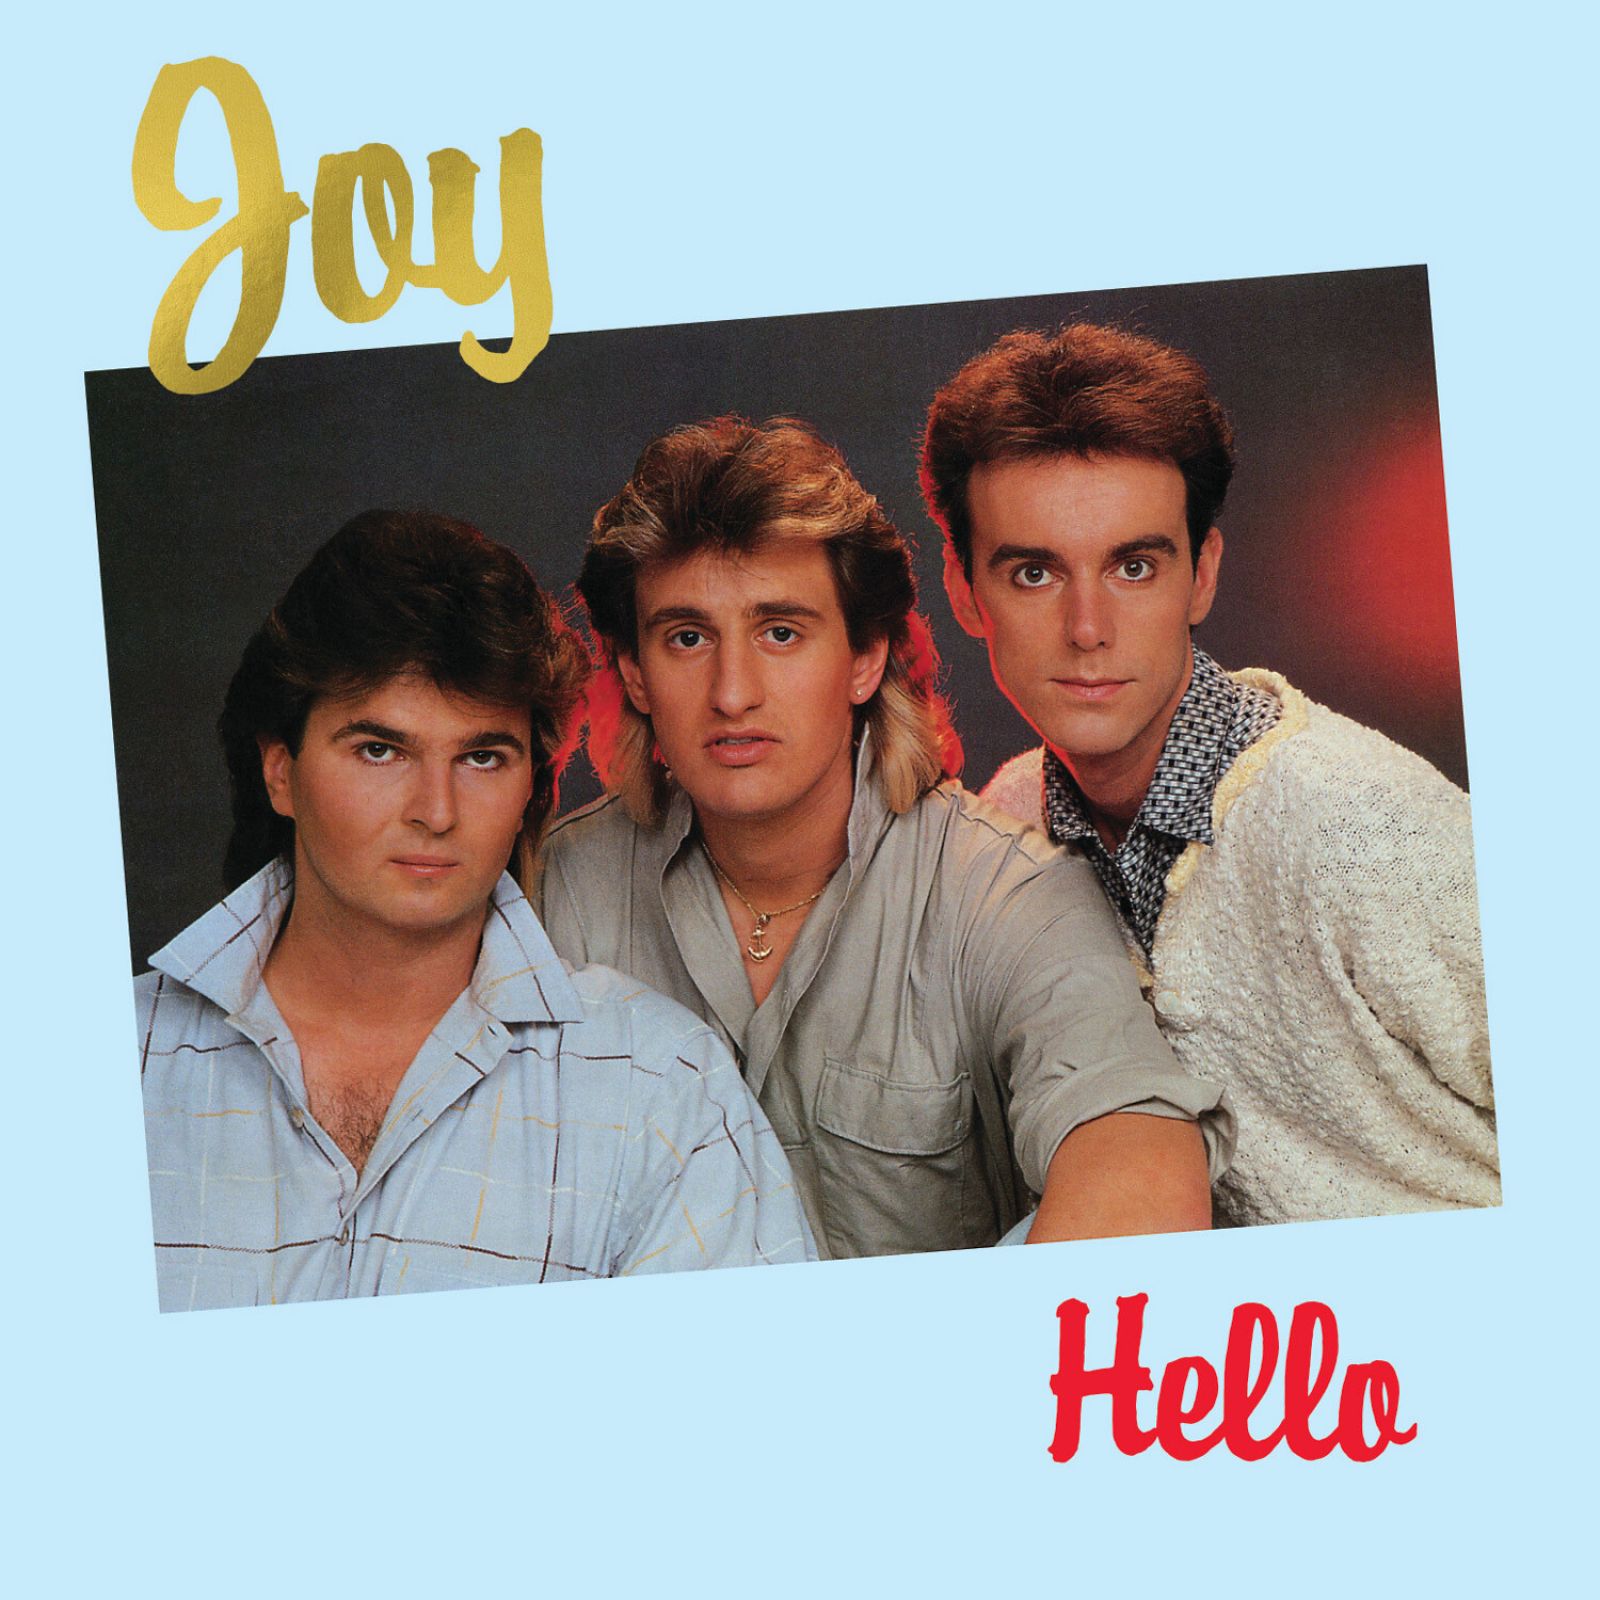 Фото группы джой. Группа Джой в молодости. Группа Джой Валери. Joy hello 1986 LP. Группа Joy пластинки.